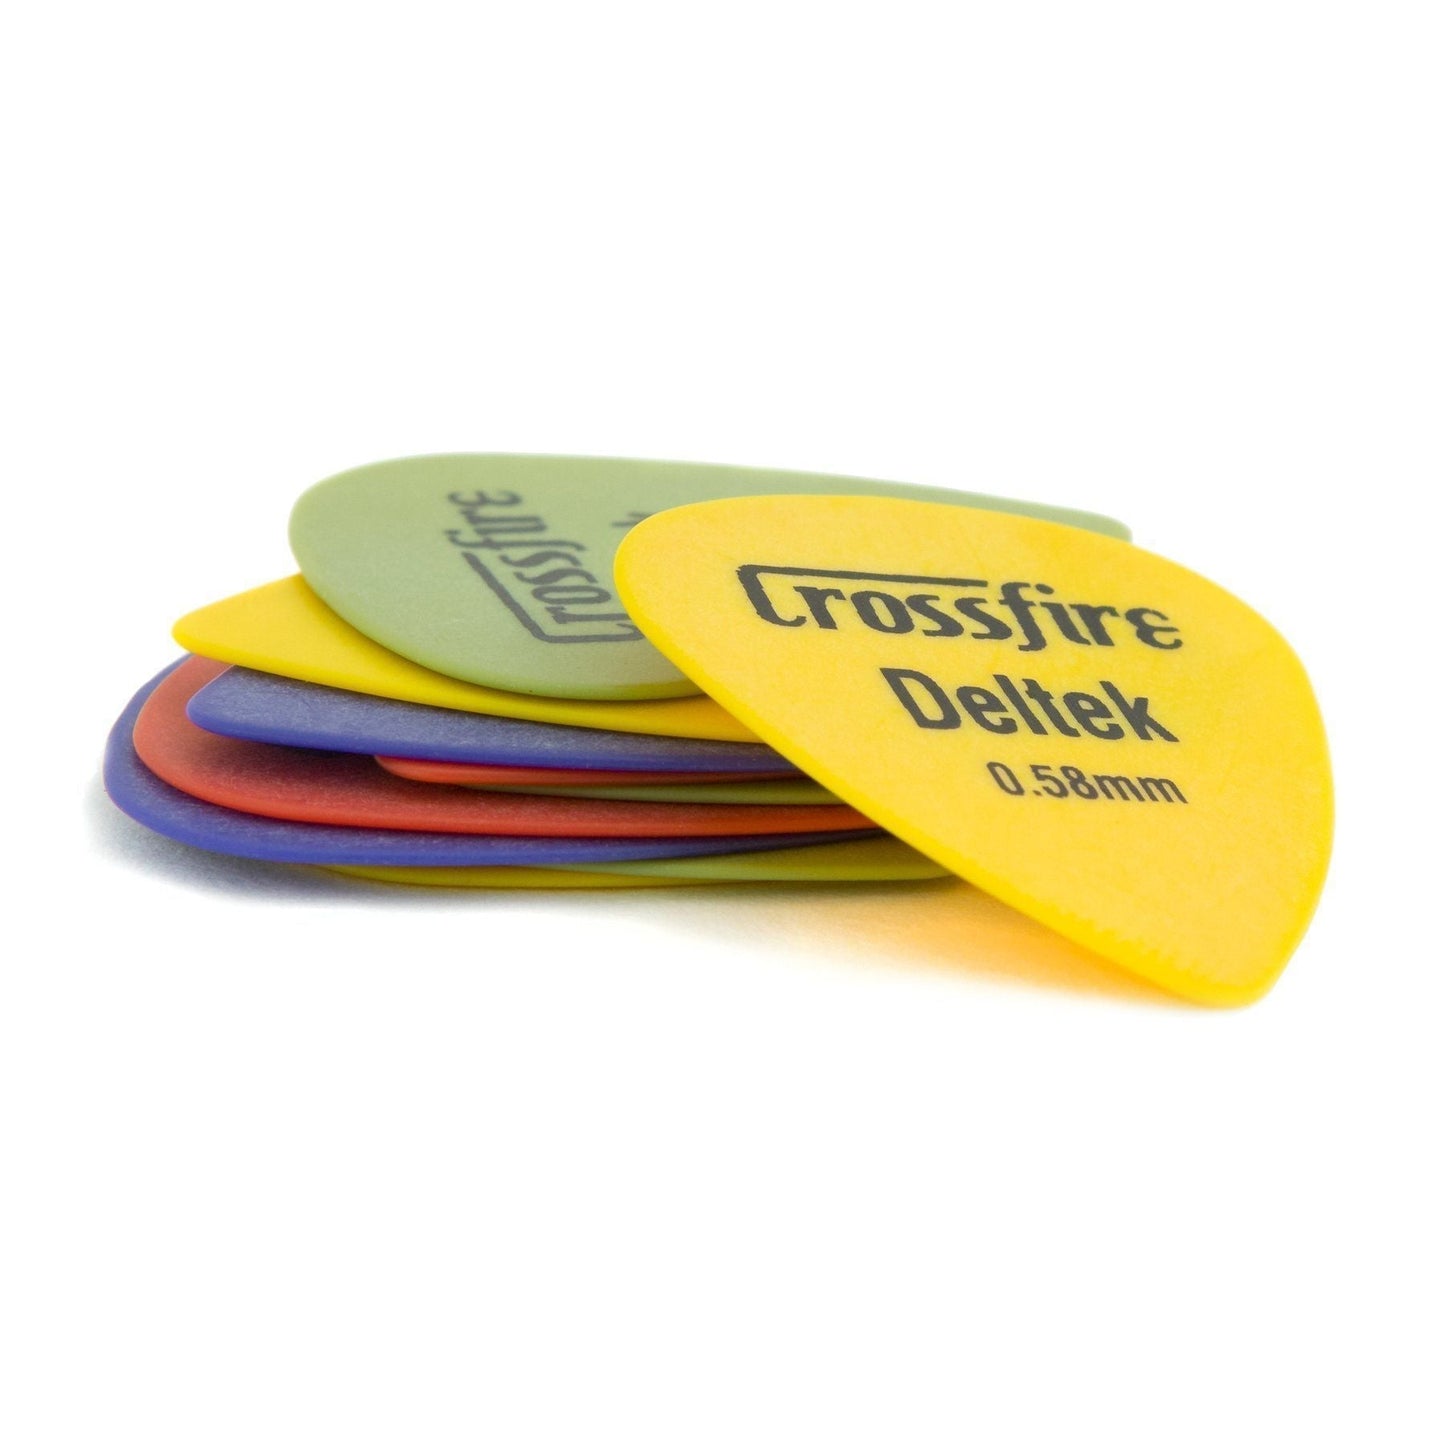 Crossfire Deltek 0.58mm Guitar Picks (10 Pack Assorted)